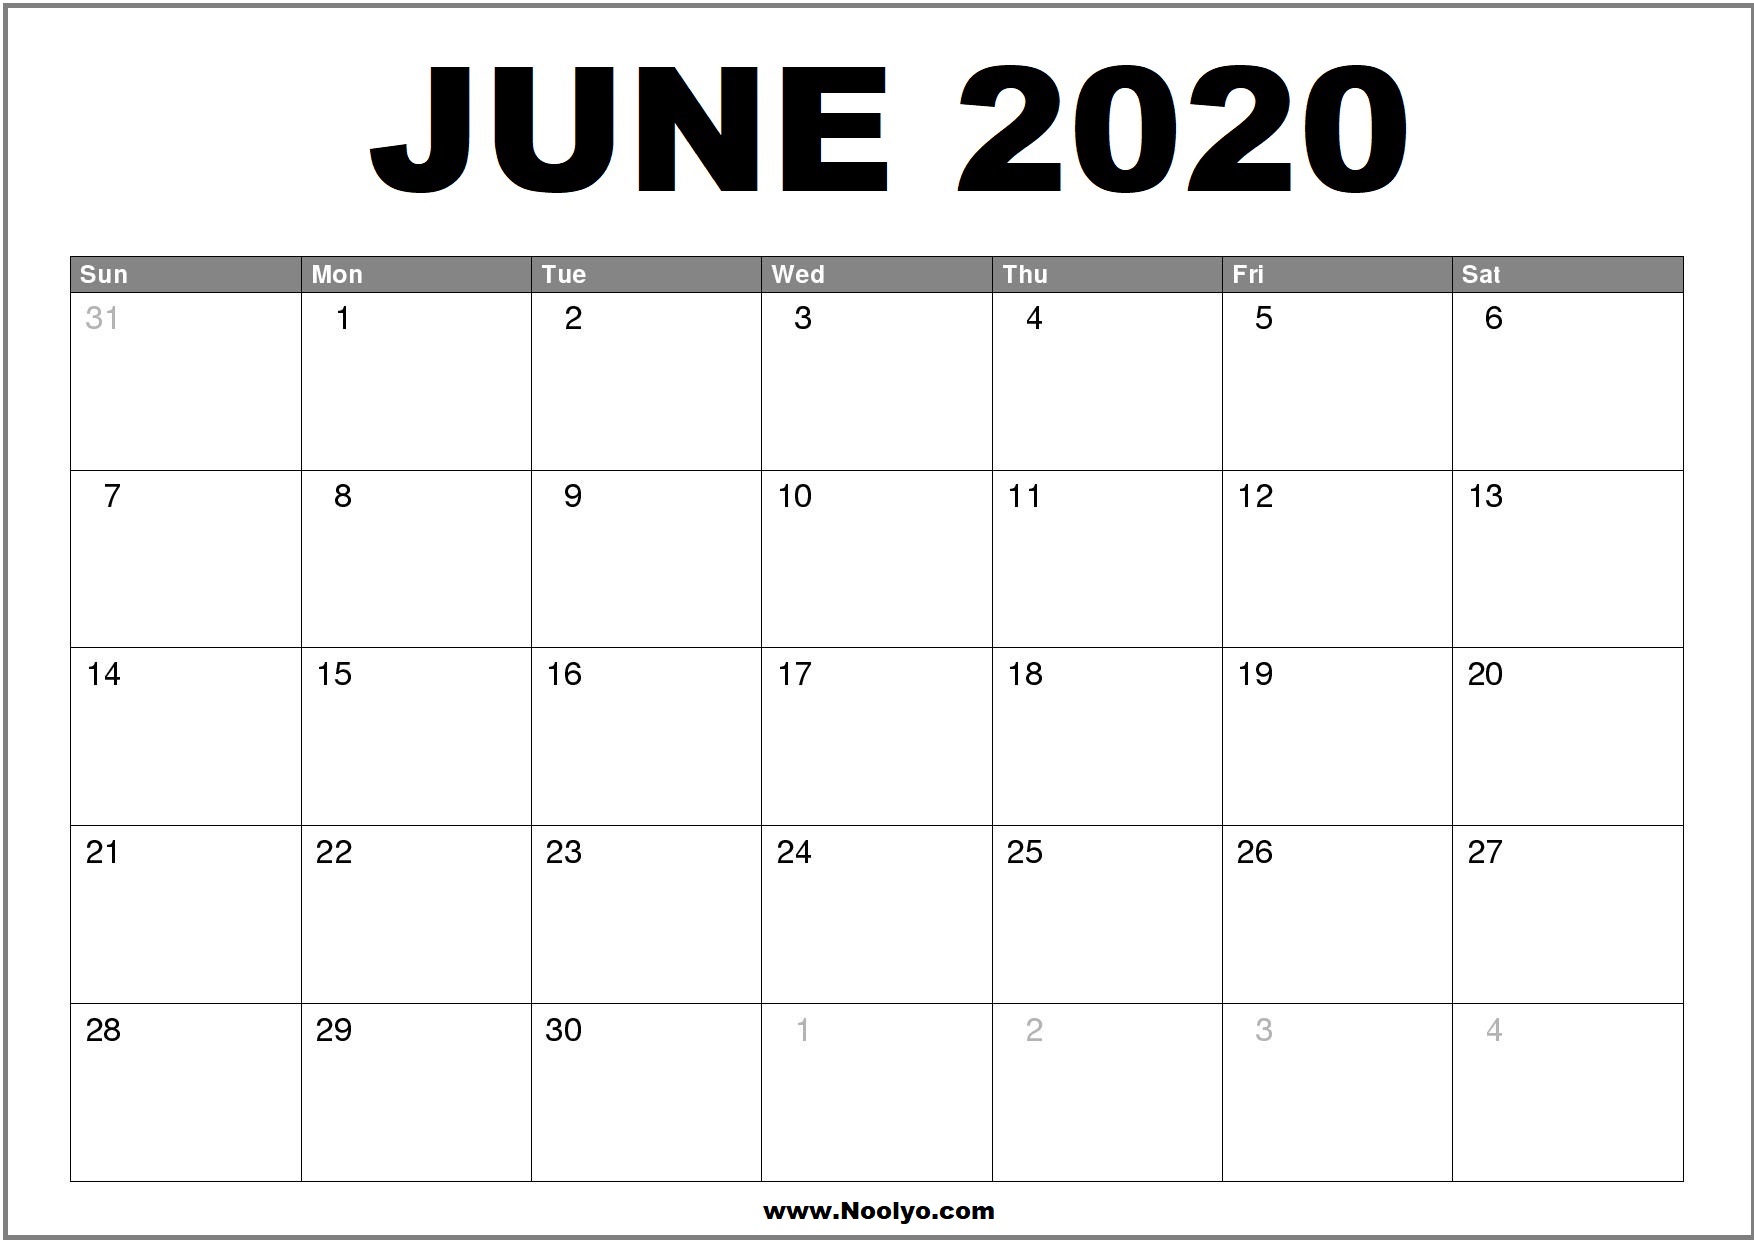 June 2020 Calendar Printable Free Download